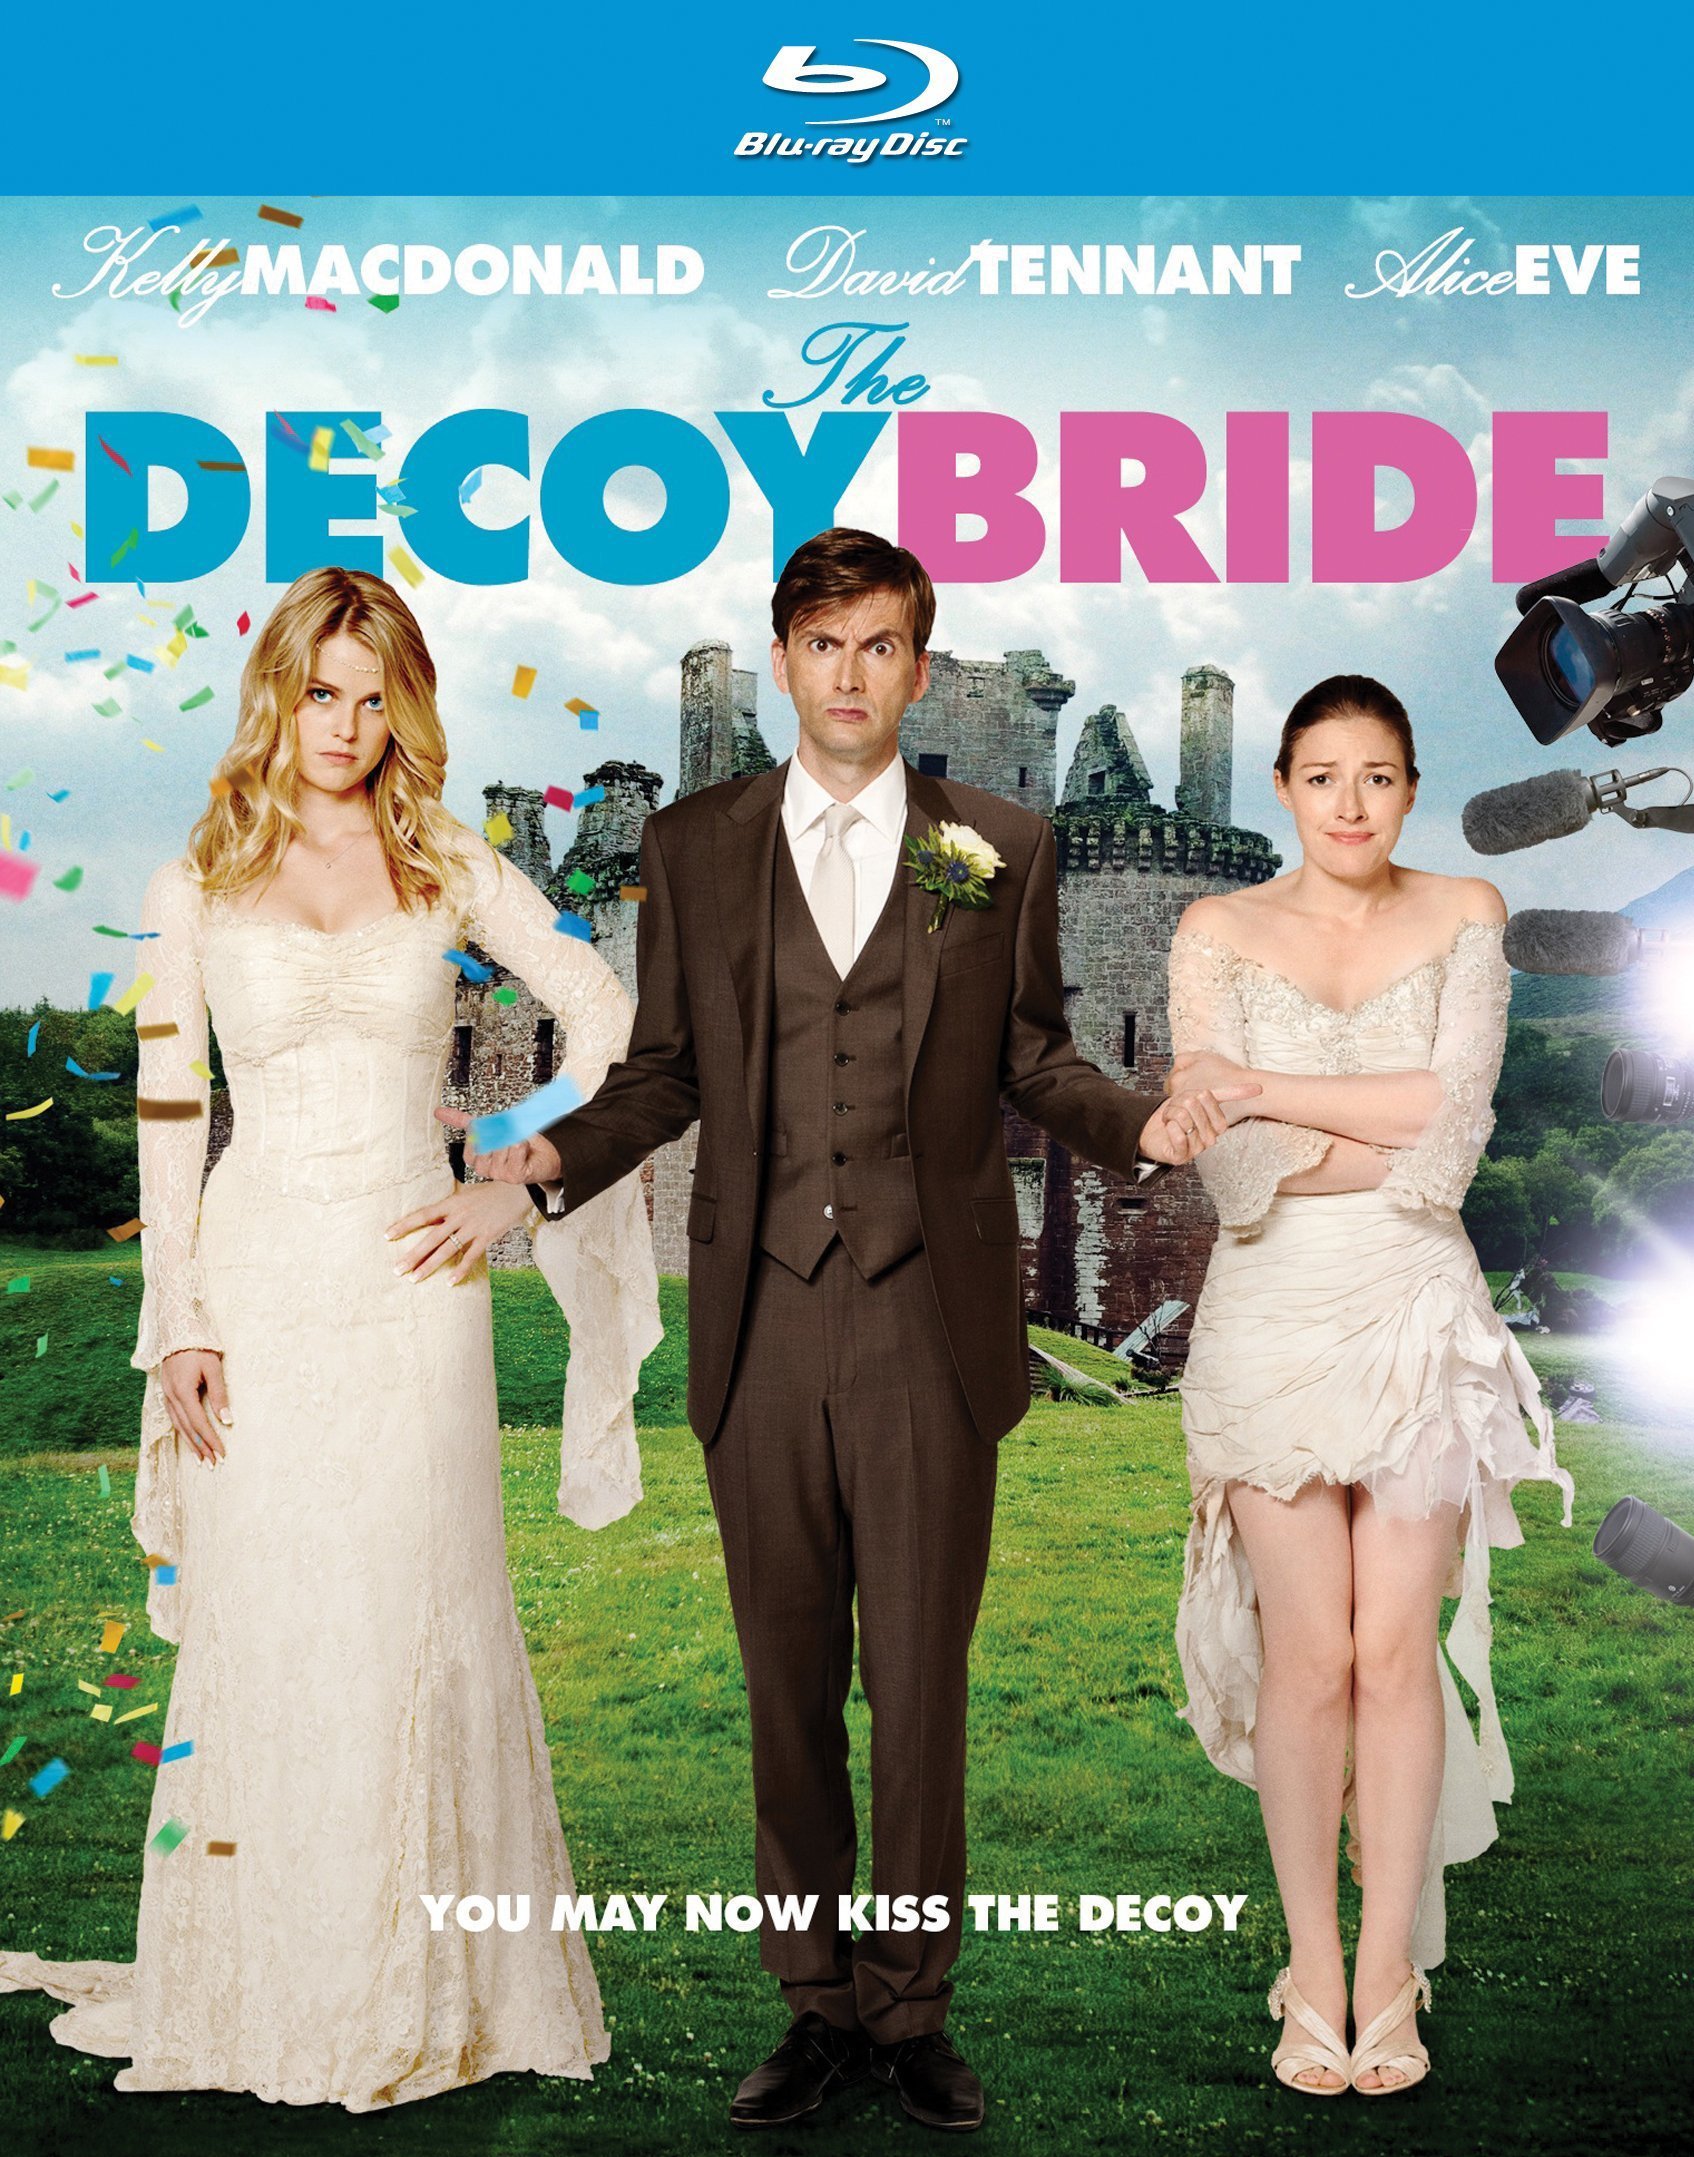 Decoy Bride #1